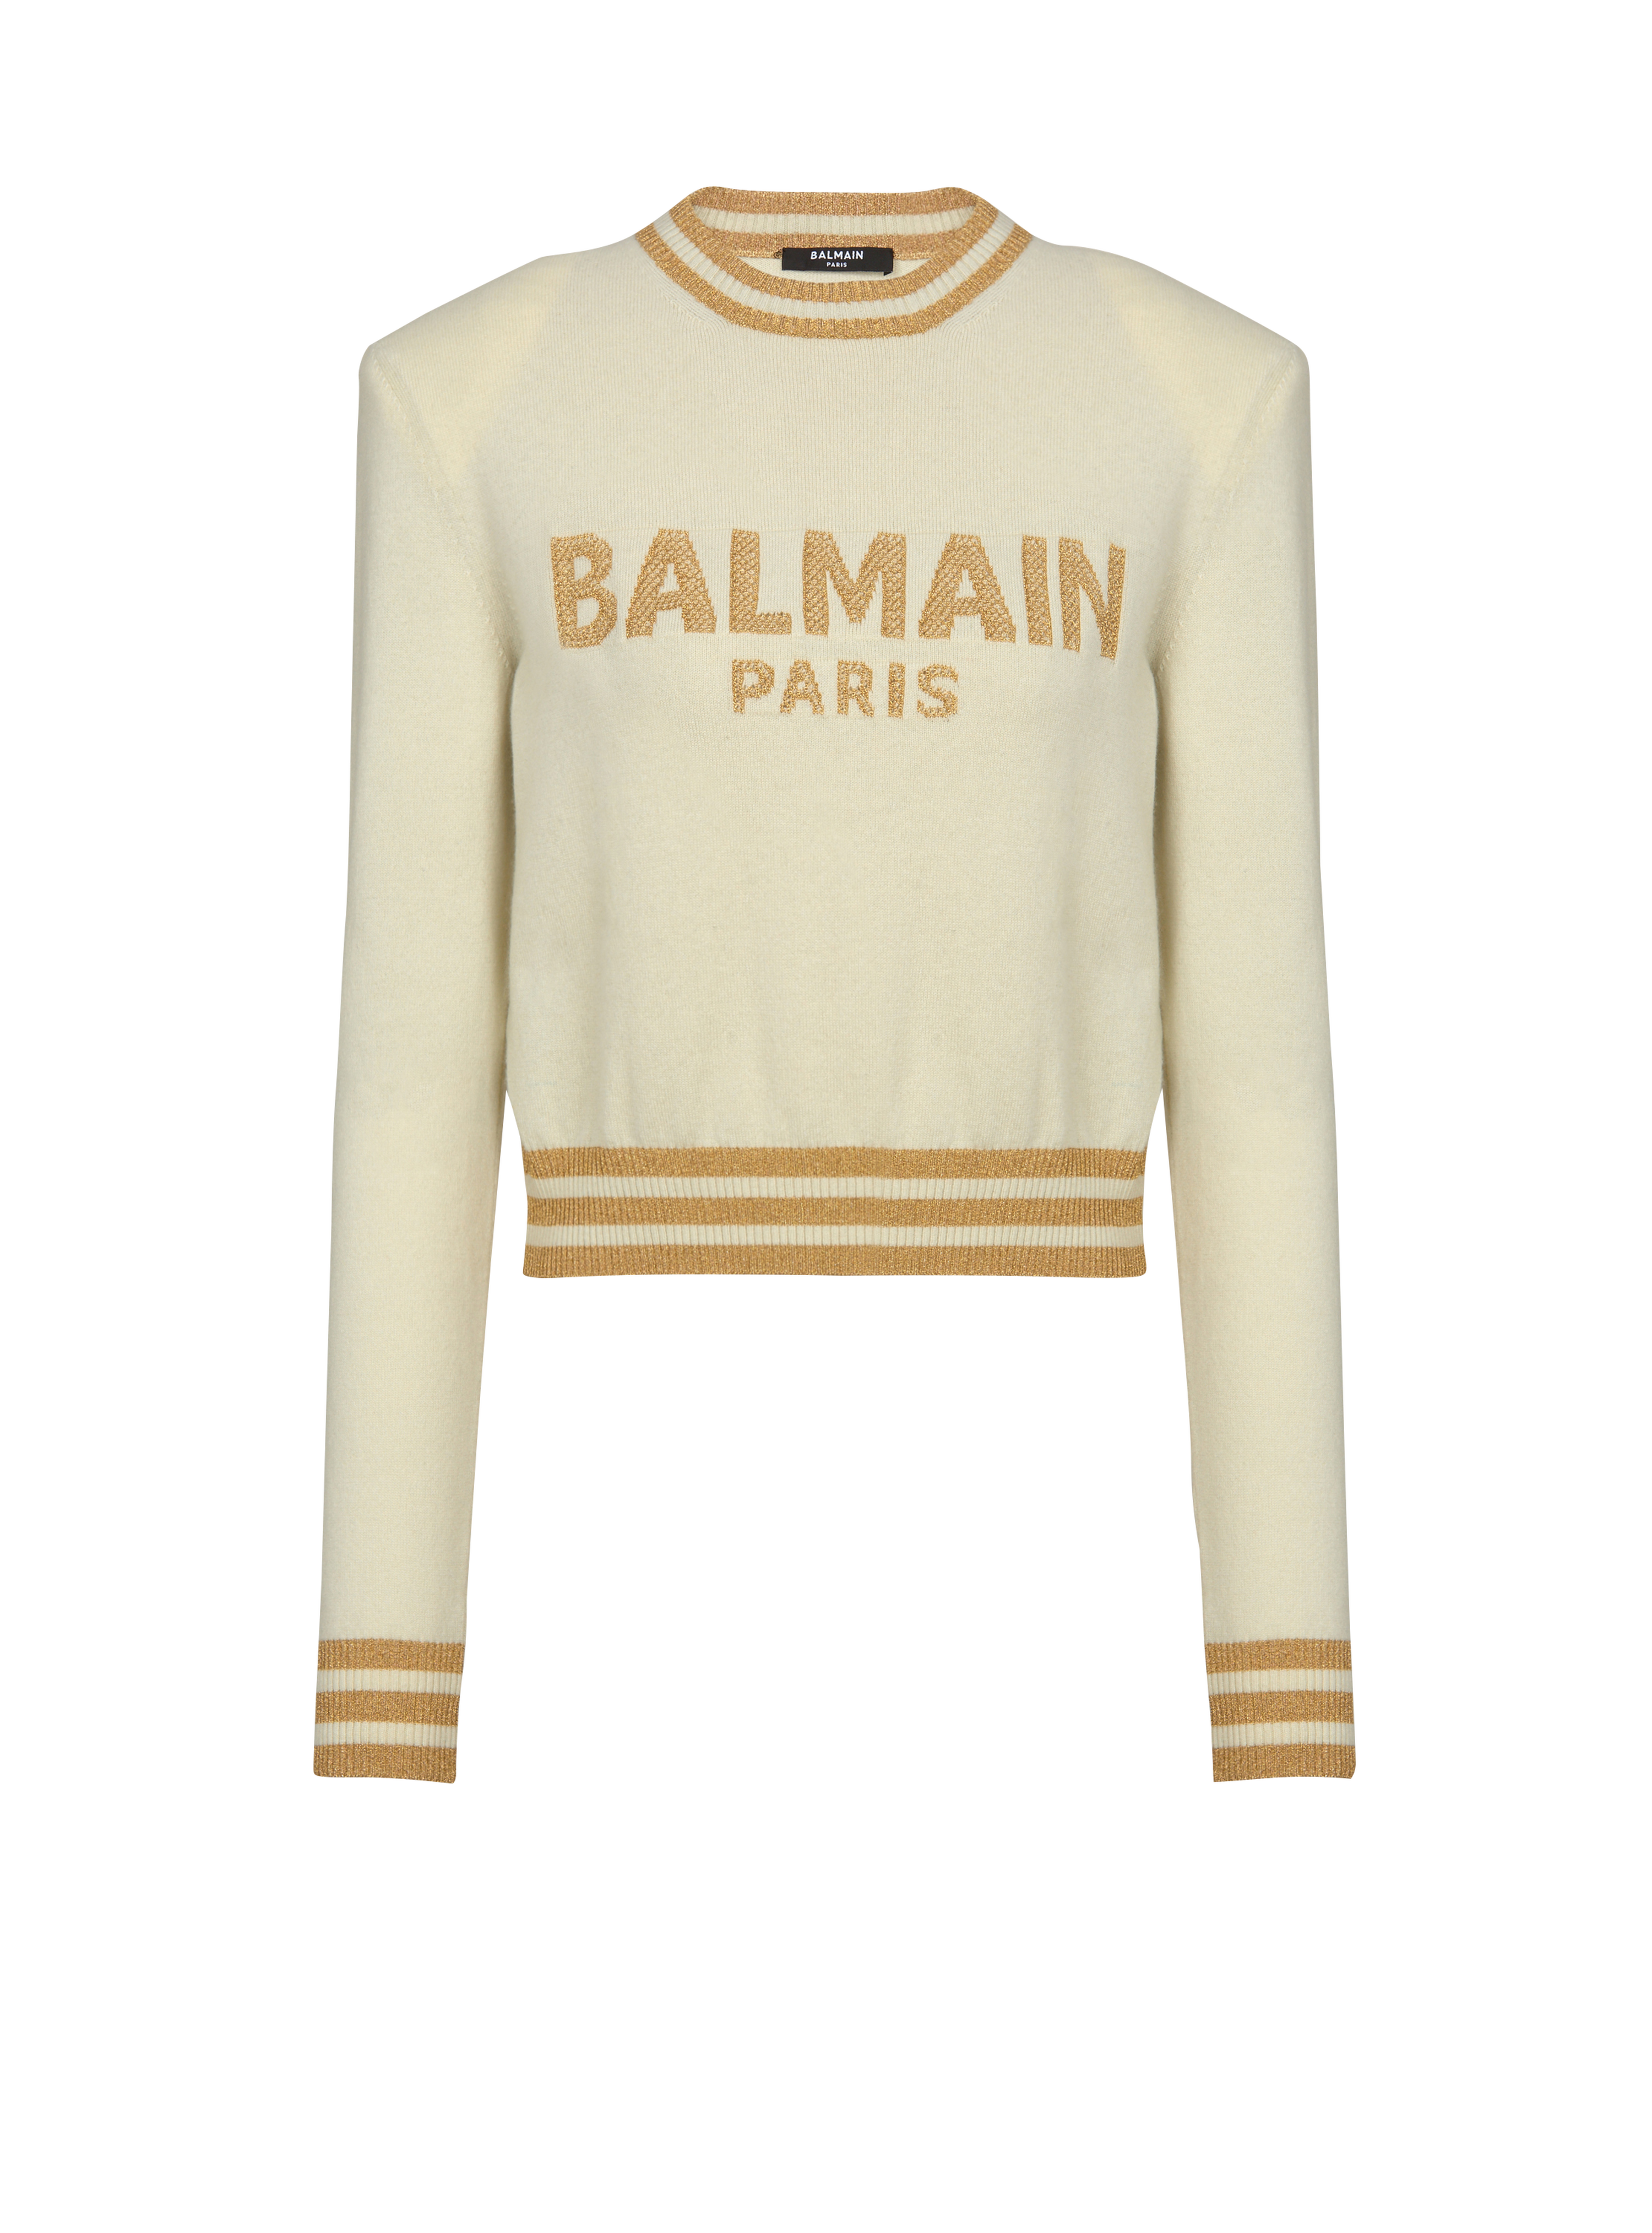 Felpa corta in lana con logo Balmain, giallo